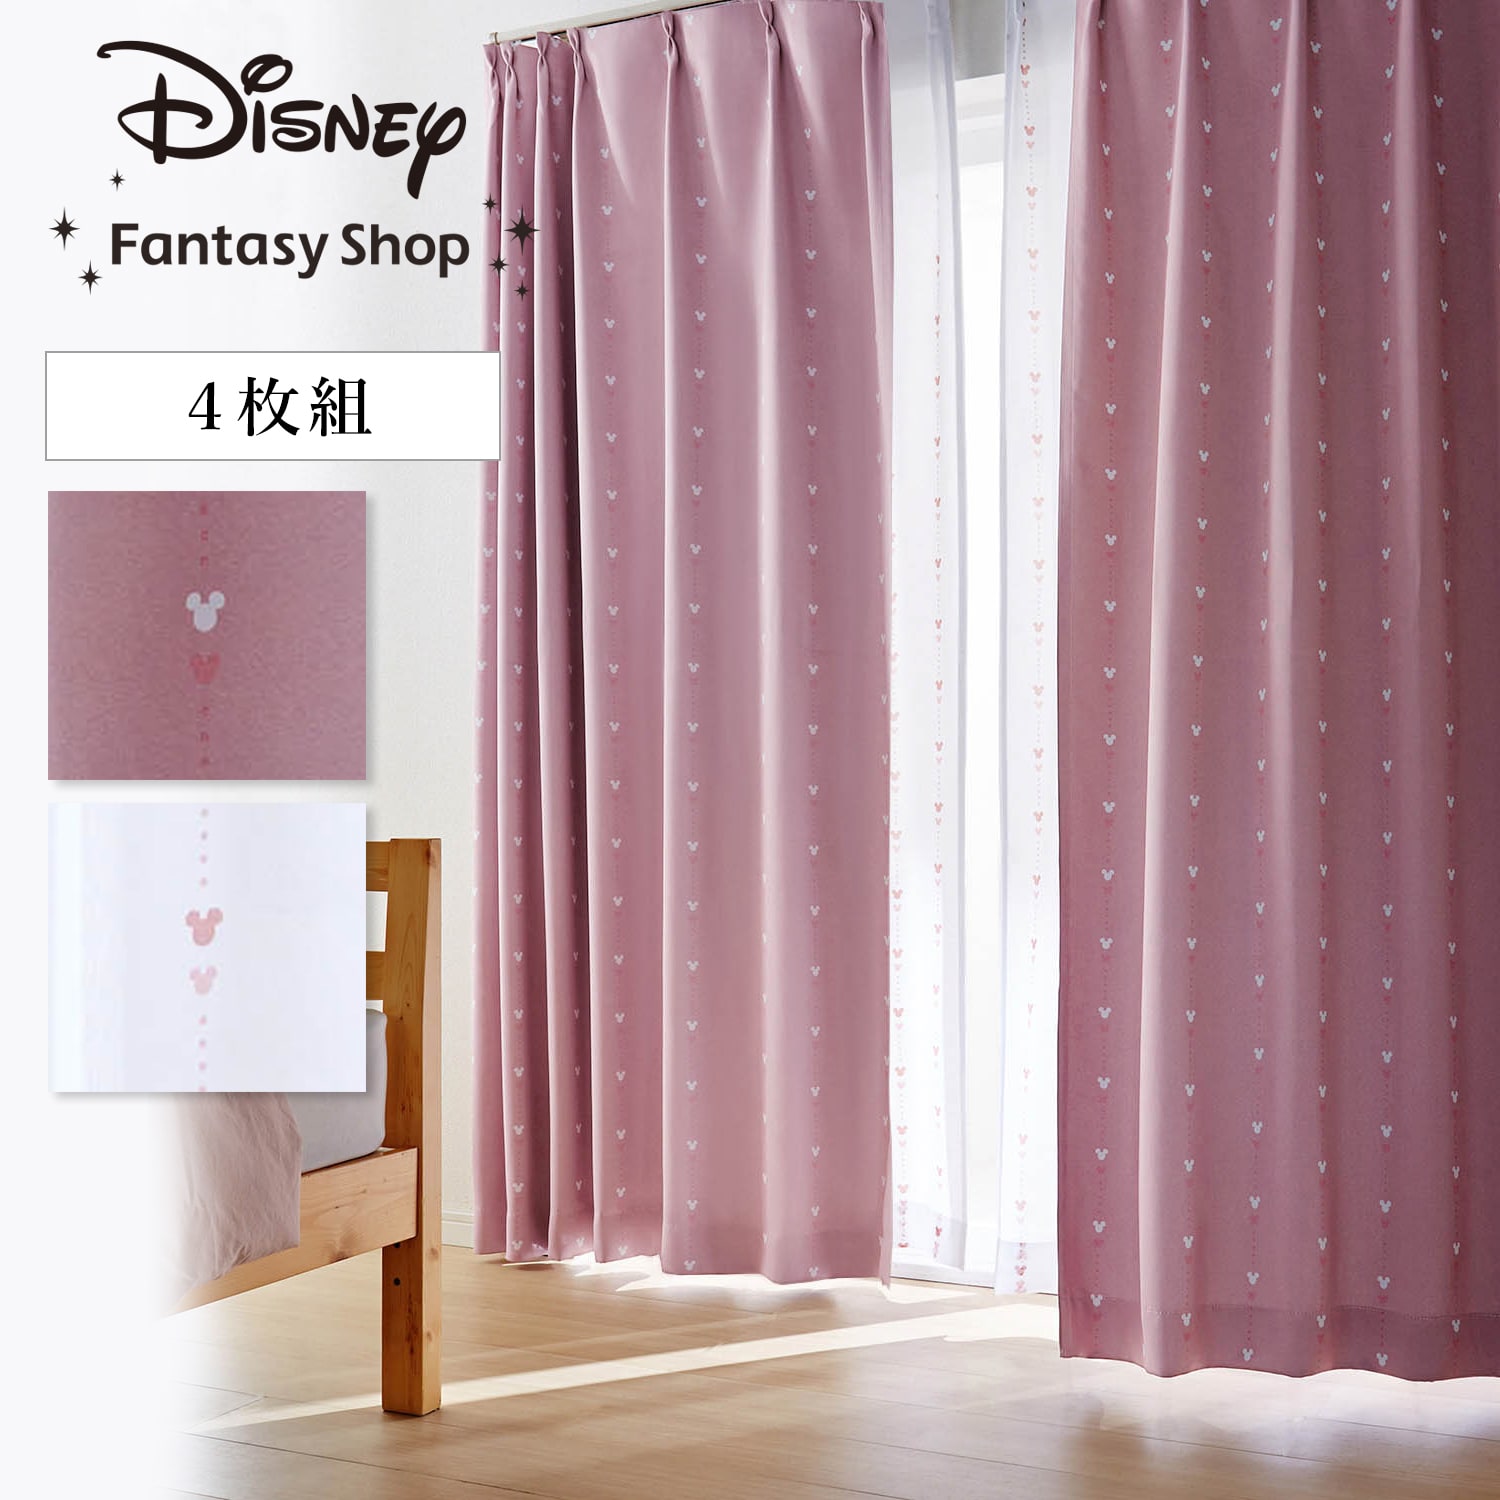 【ディズニー/Disney】遮光カーテン&UVカット・ミラーレースカーテンセット「ミッキーモチーフ」 [4枚組]